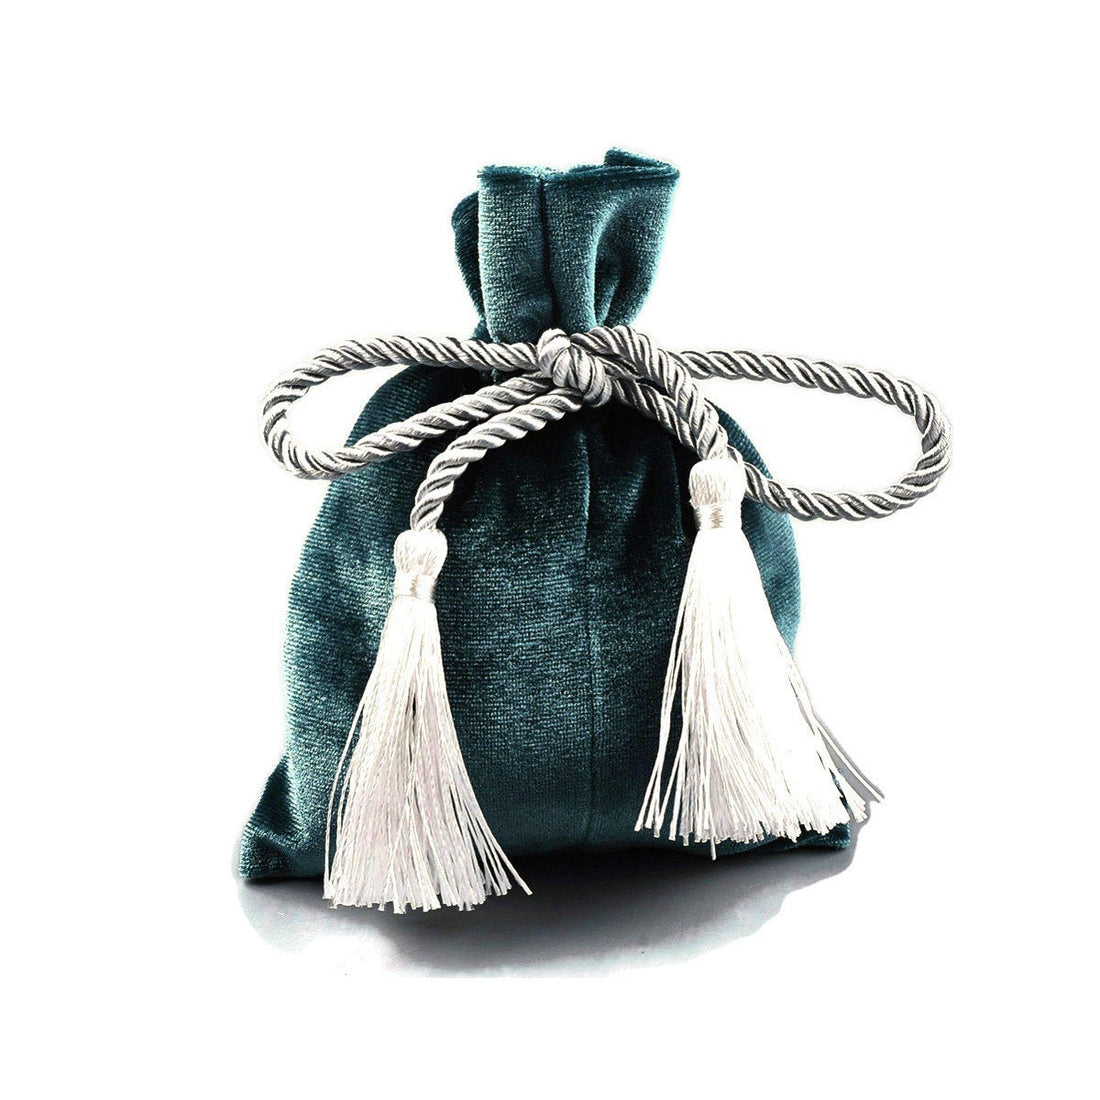 Emerald velvet pouch bag with tassel rope